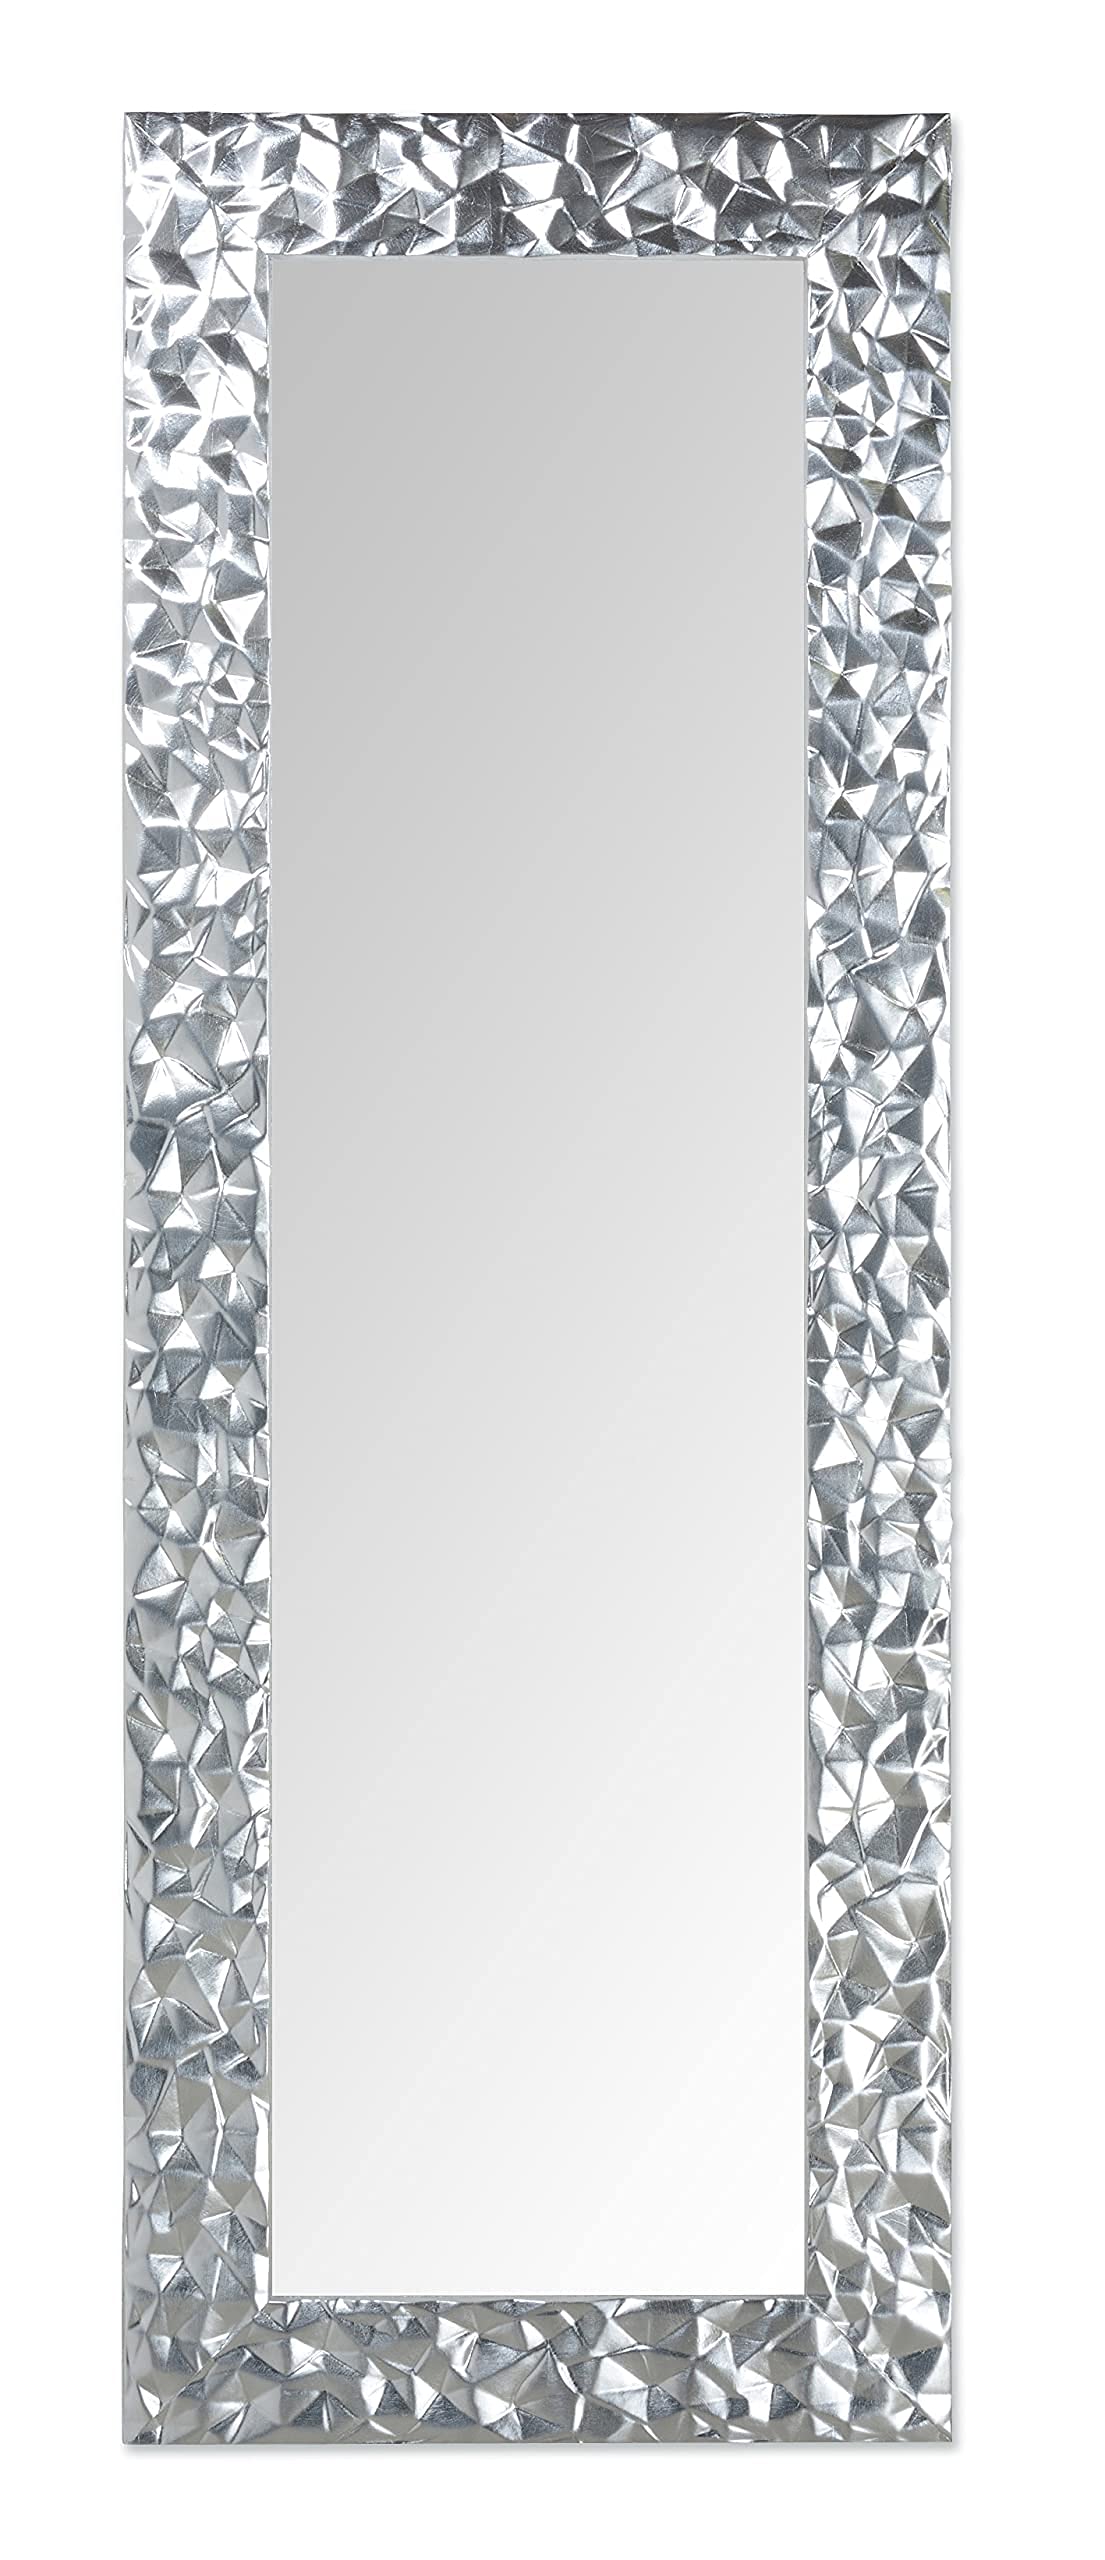 MO.WA Spiegel Wandspiegel Silber Ganzkörperspiegel 52x147 Blattsilber, Lehnspiegel Modern, Dekospiegel, hängender Spiegel Holzrahmen